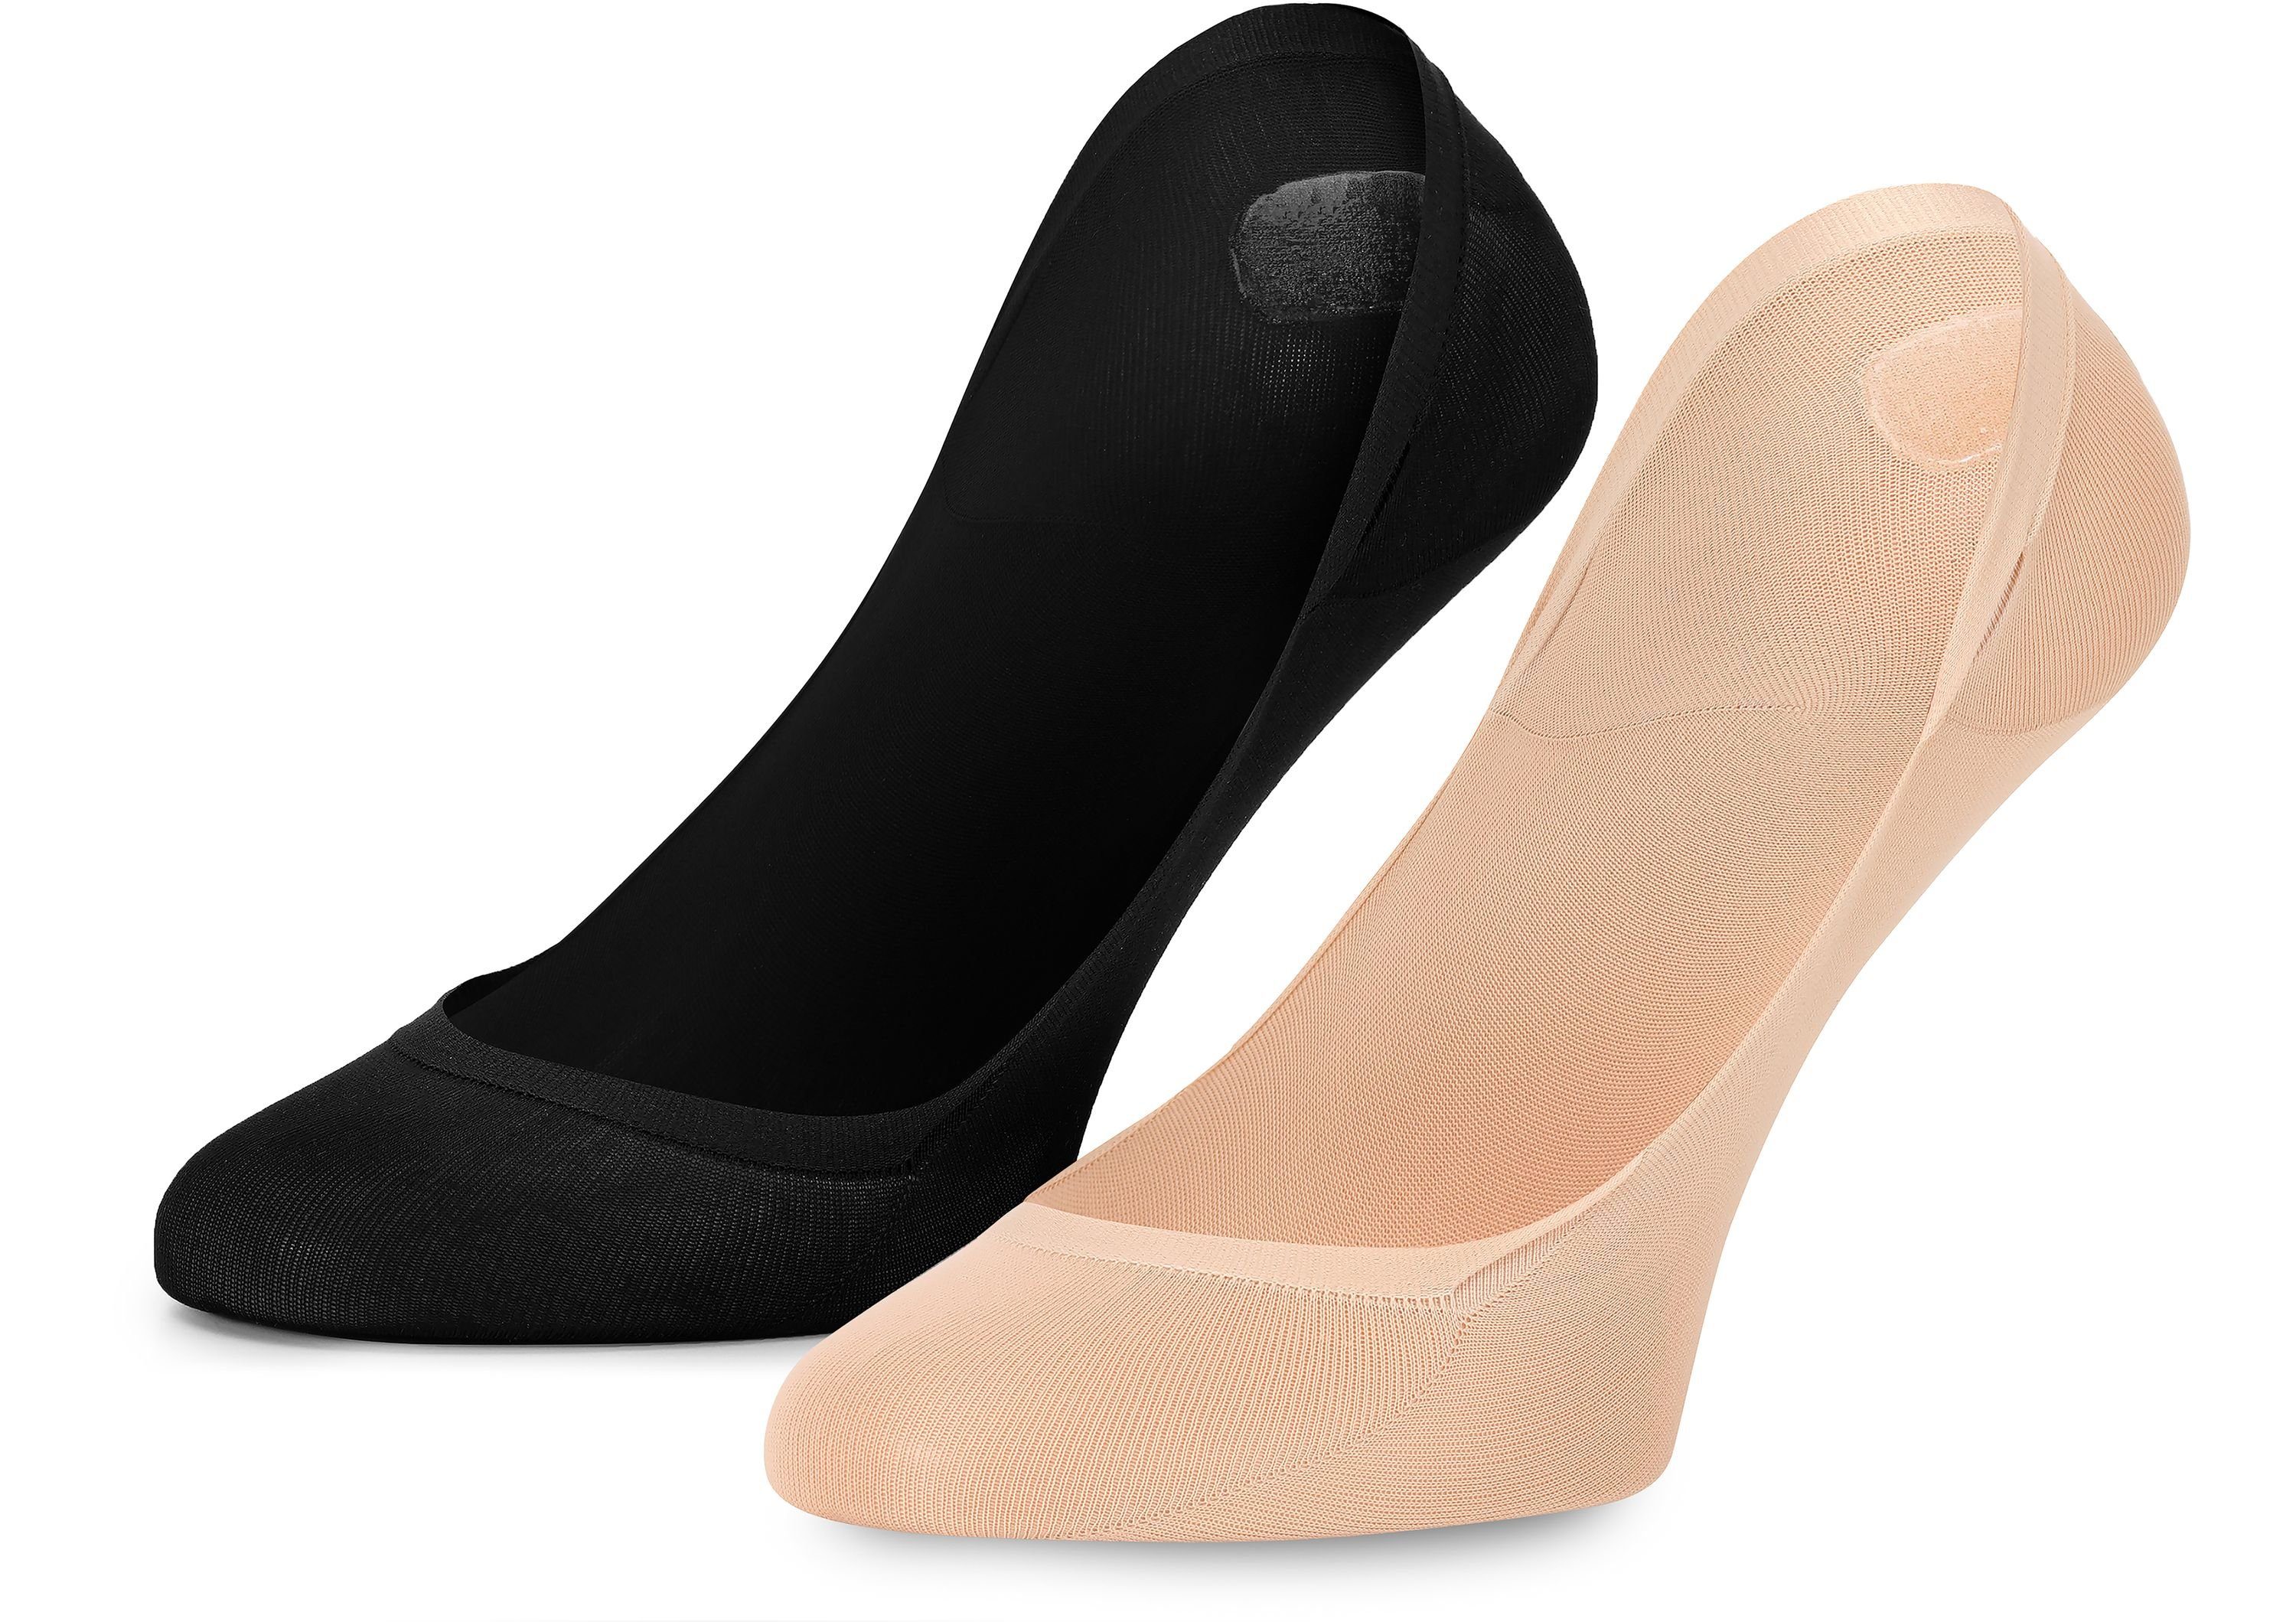 Atmungsaktive 2Pack Socken Schwarz/Beige Halbsocken - MSGI046 Style Merry Damen Füßlinge Sneaker Socken